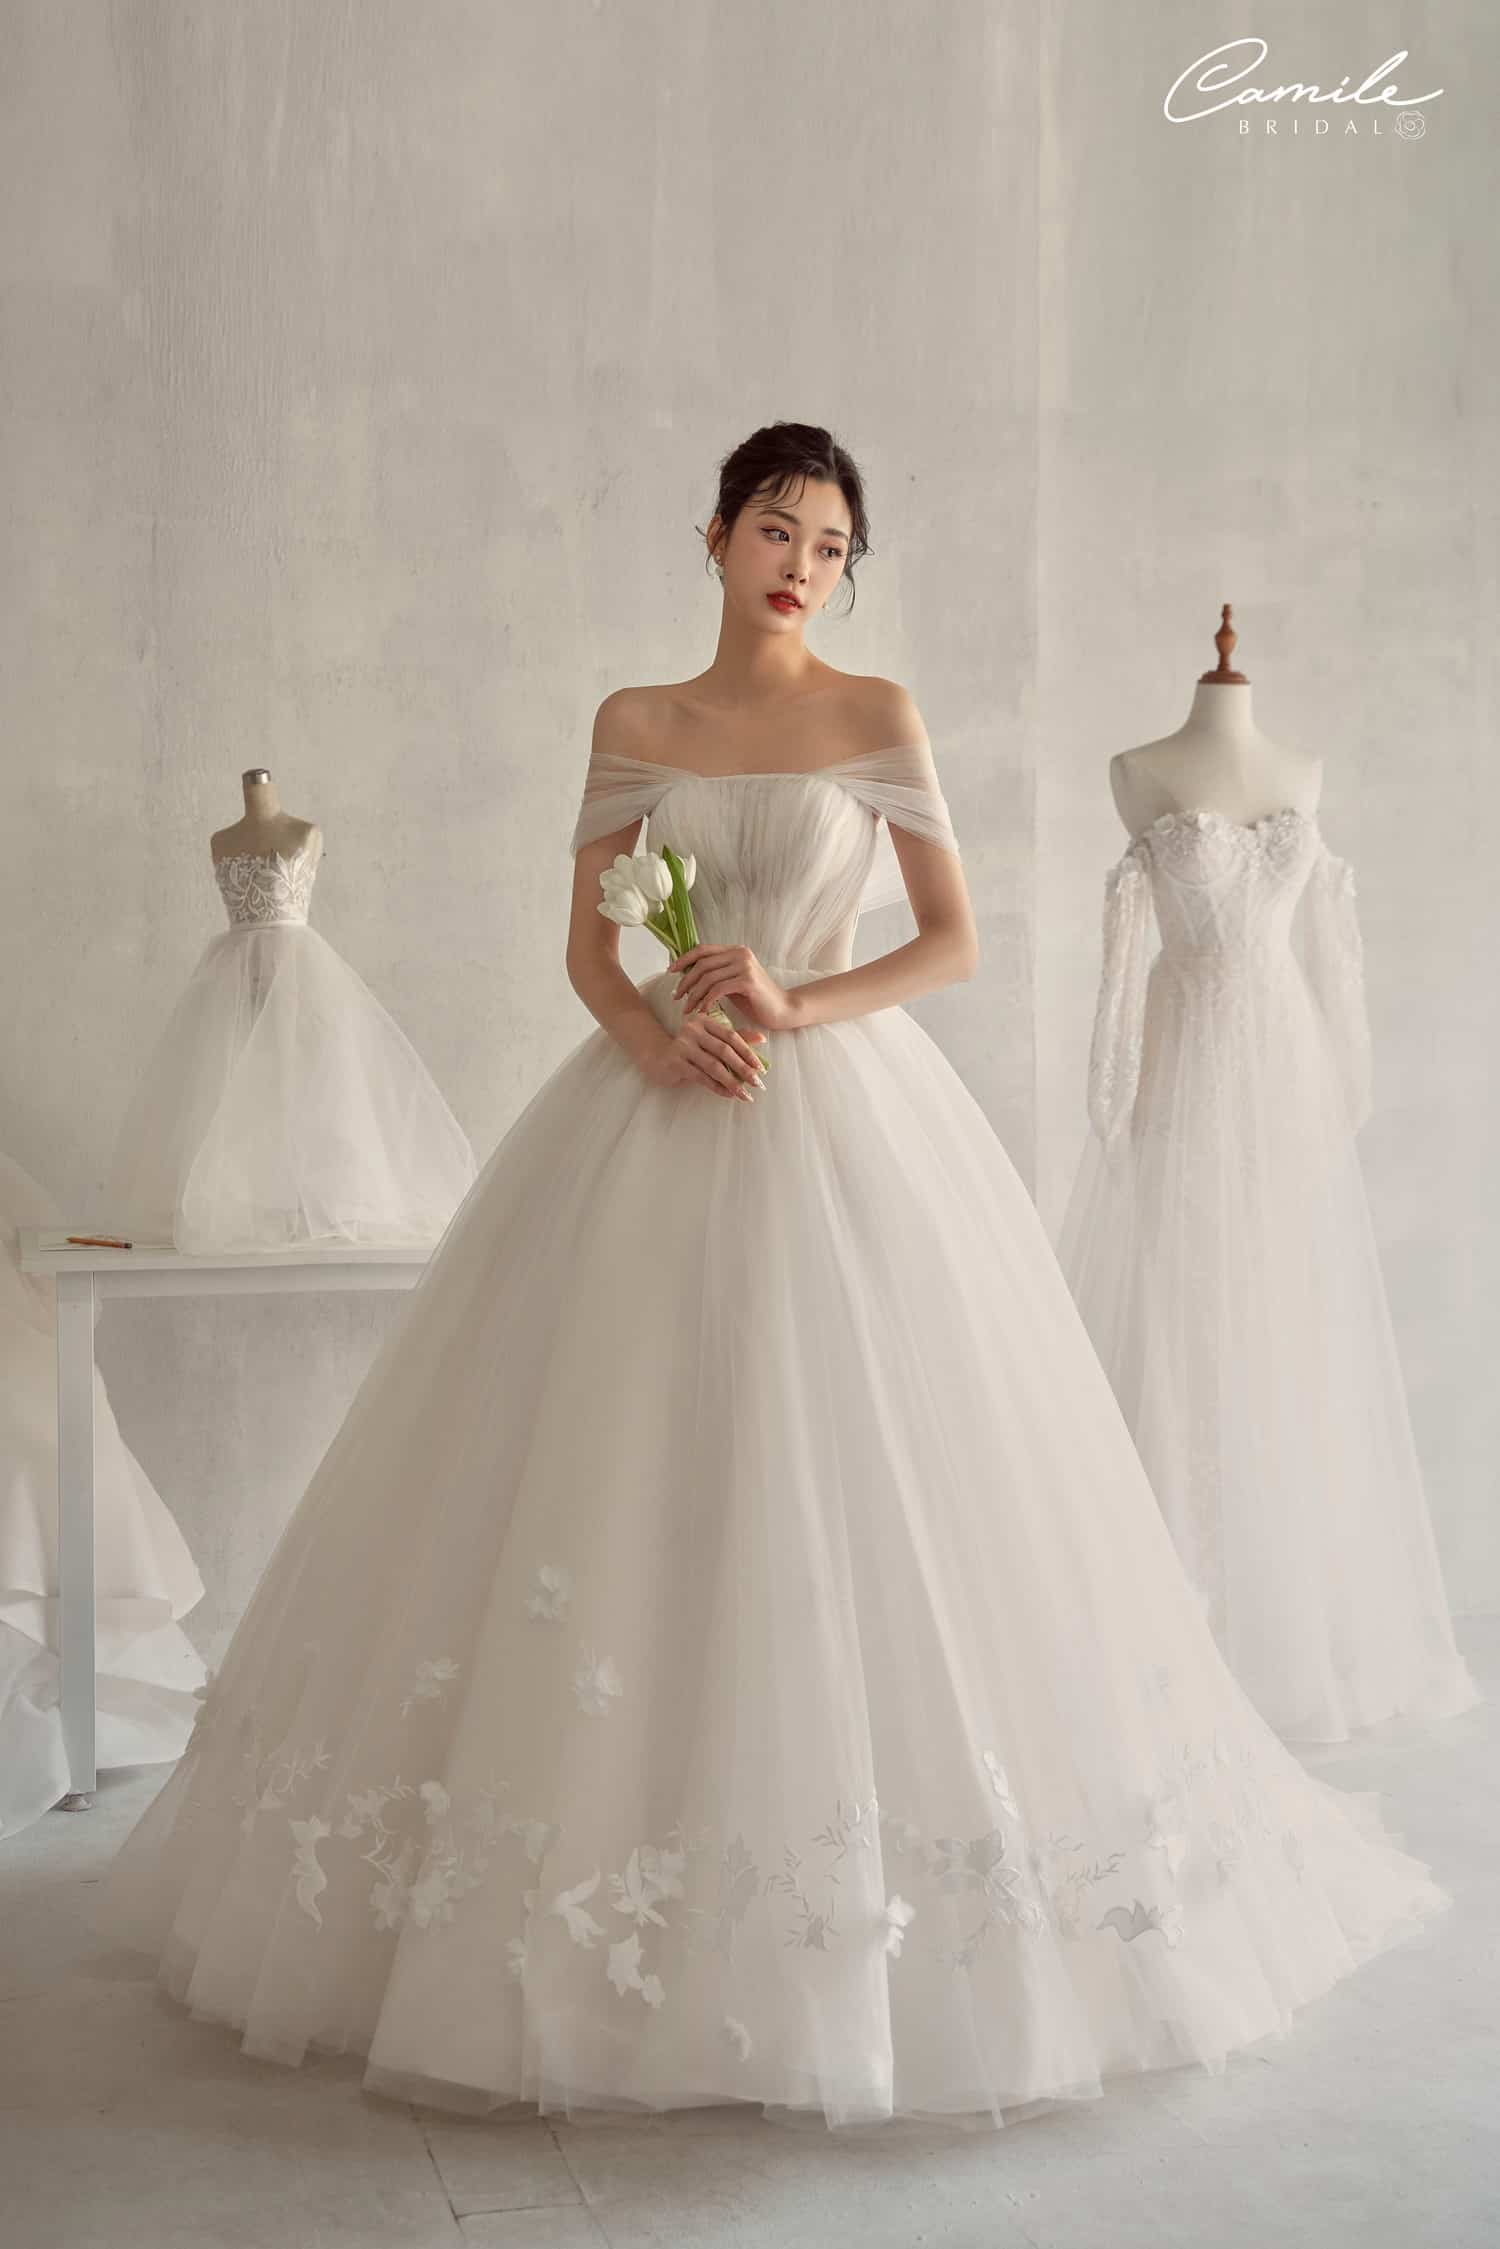 Chụp ảnh cưới Hàn Quốc tại Studio - Concept chụp ấn tượng